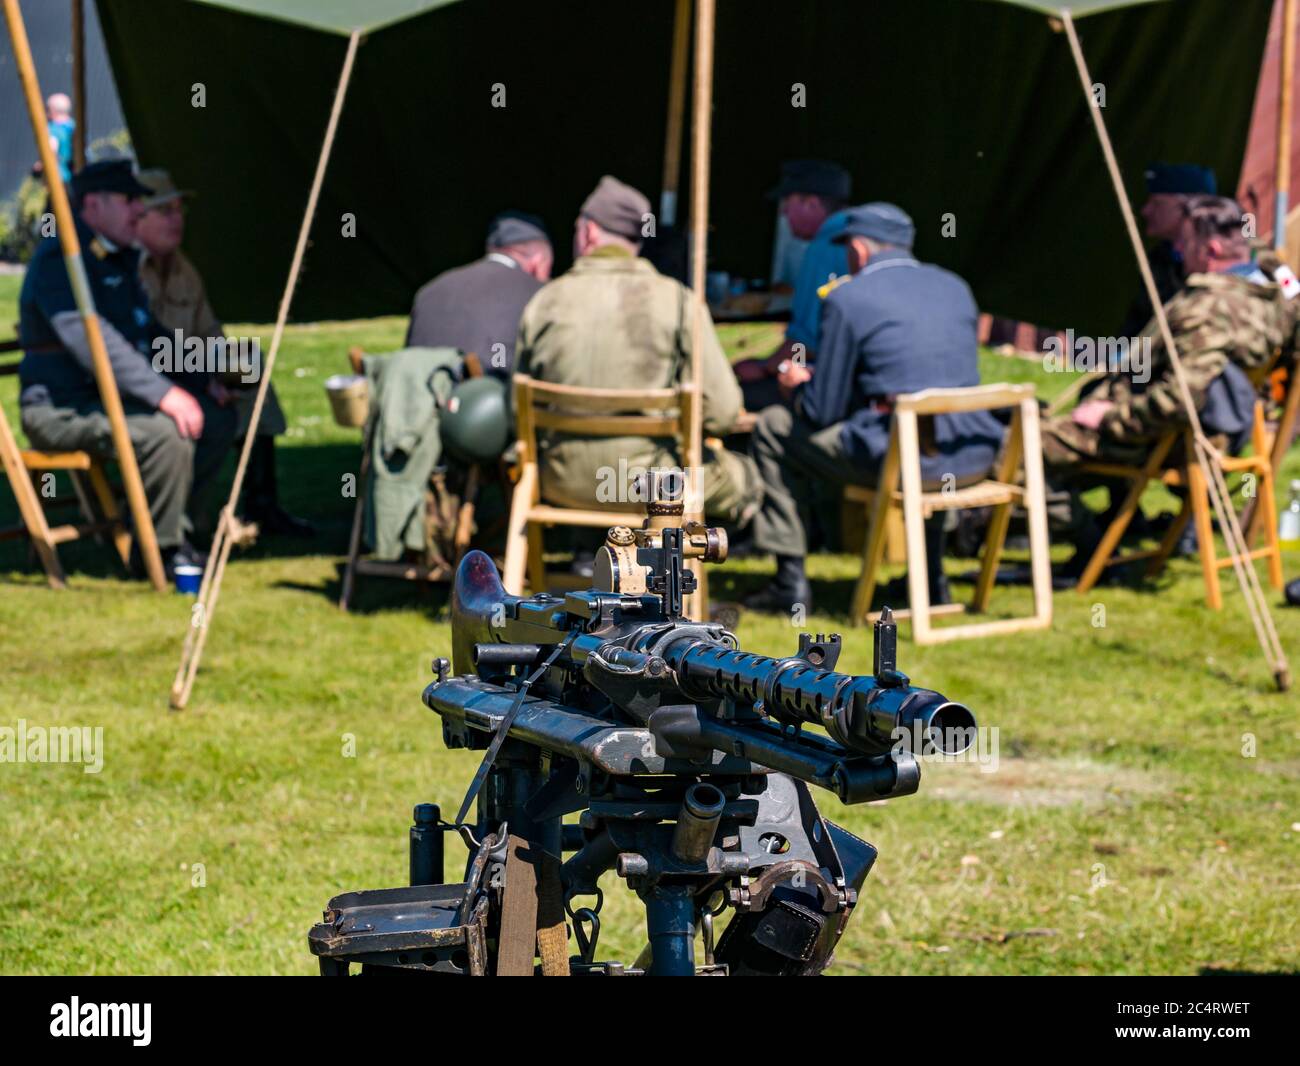 Hommes vêtus d'un uniforme militaire allemand de la Seconde Guerre mondiale et d'une mitrailleuse, événement de la guerre, East Fortune, Écosse, Royaume-Uni Banque D'Images